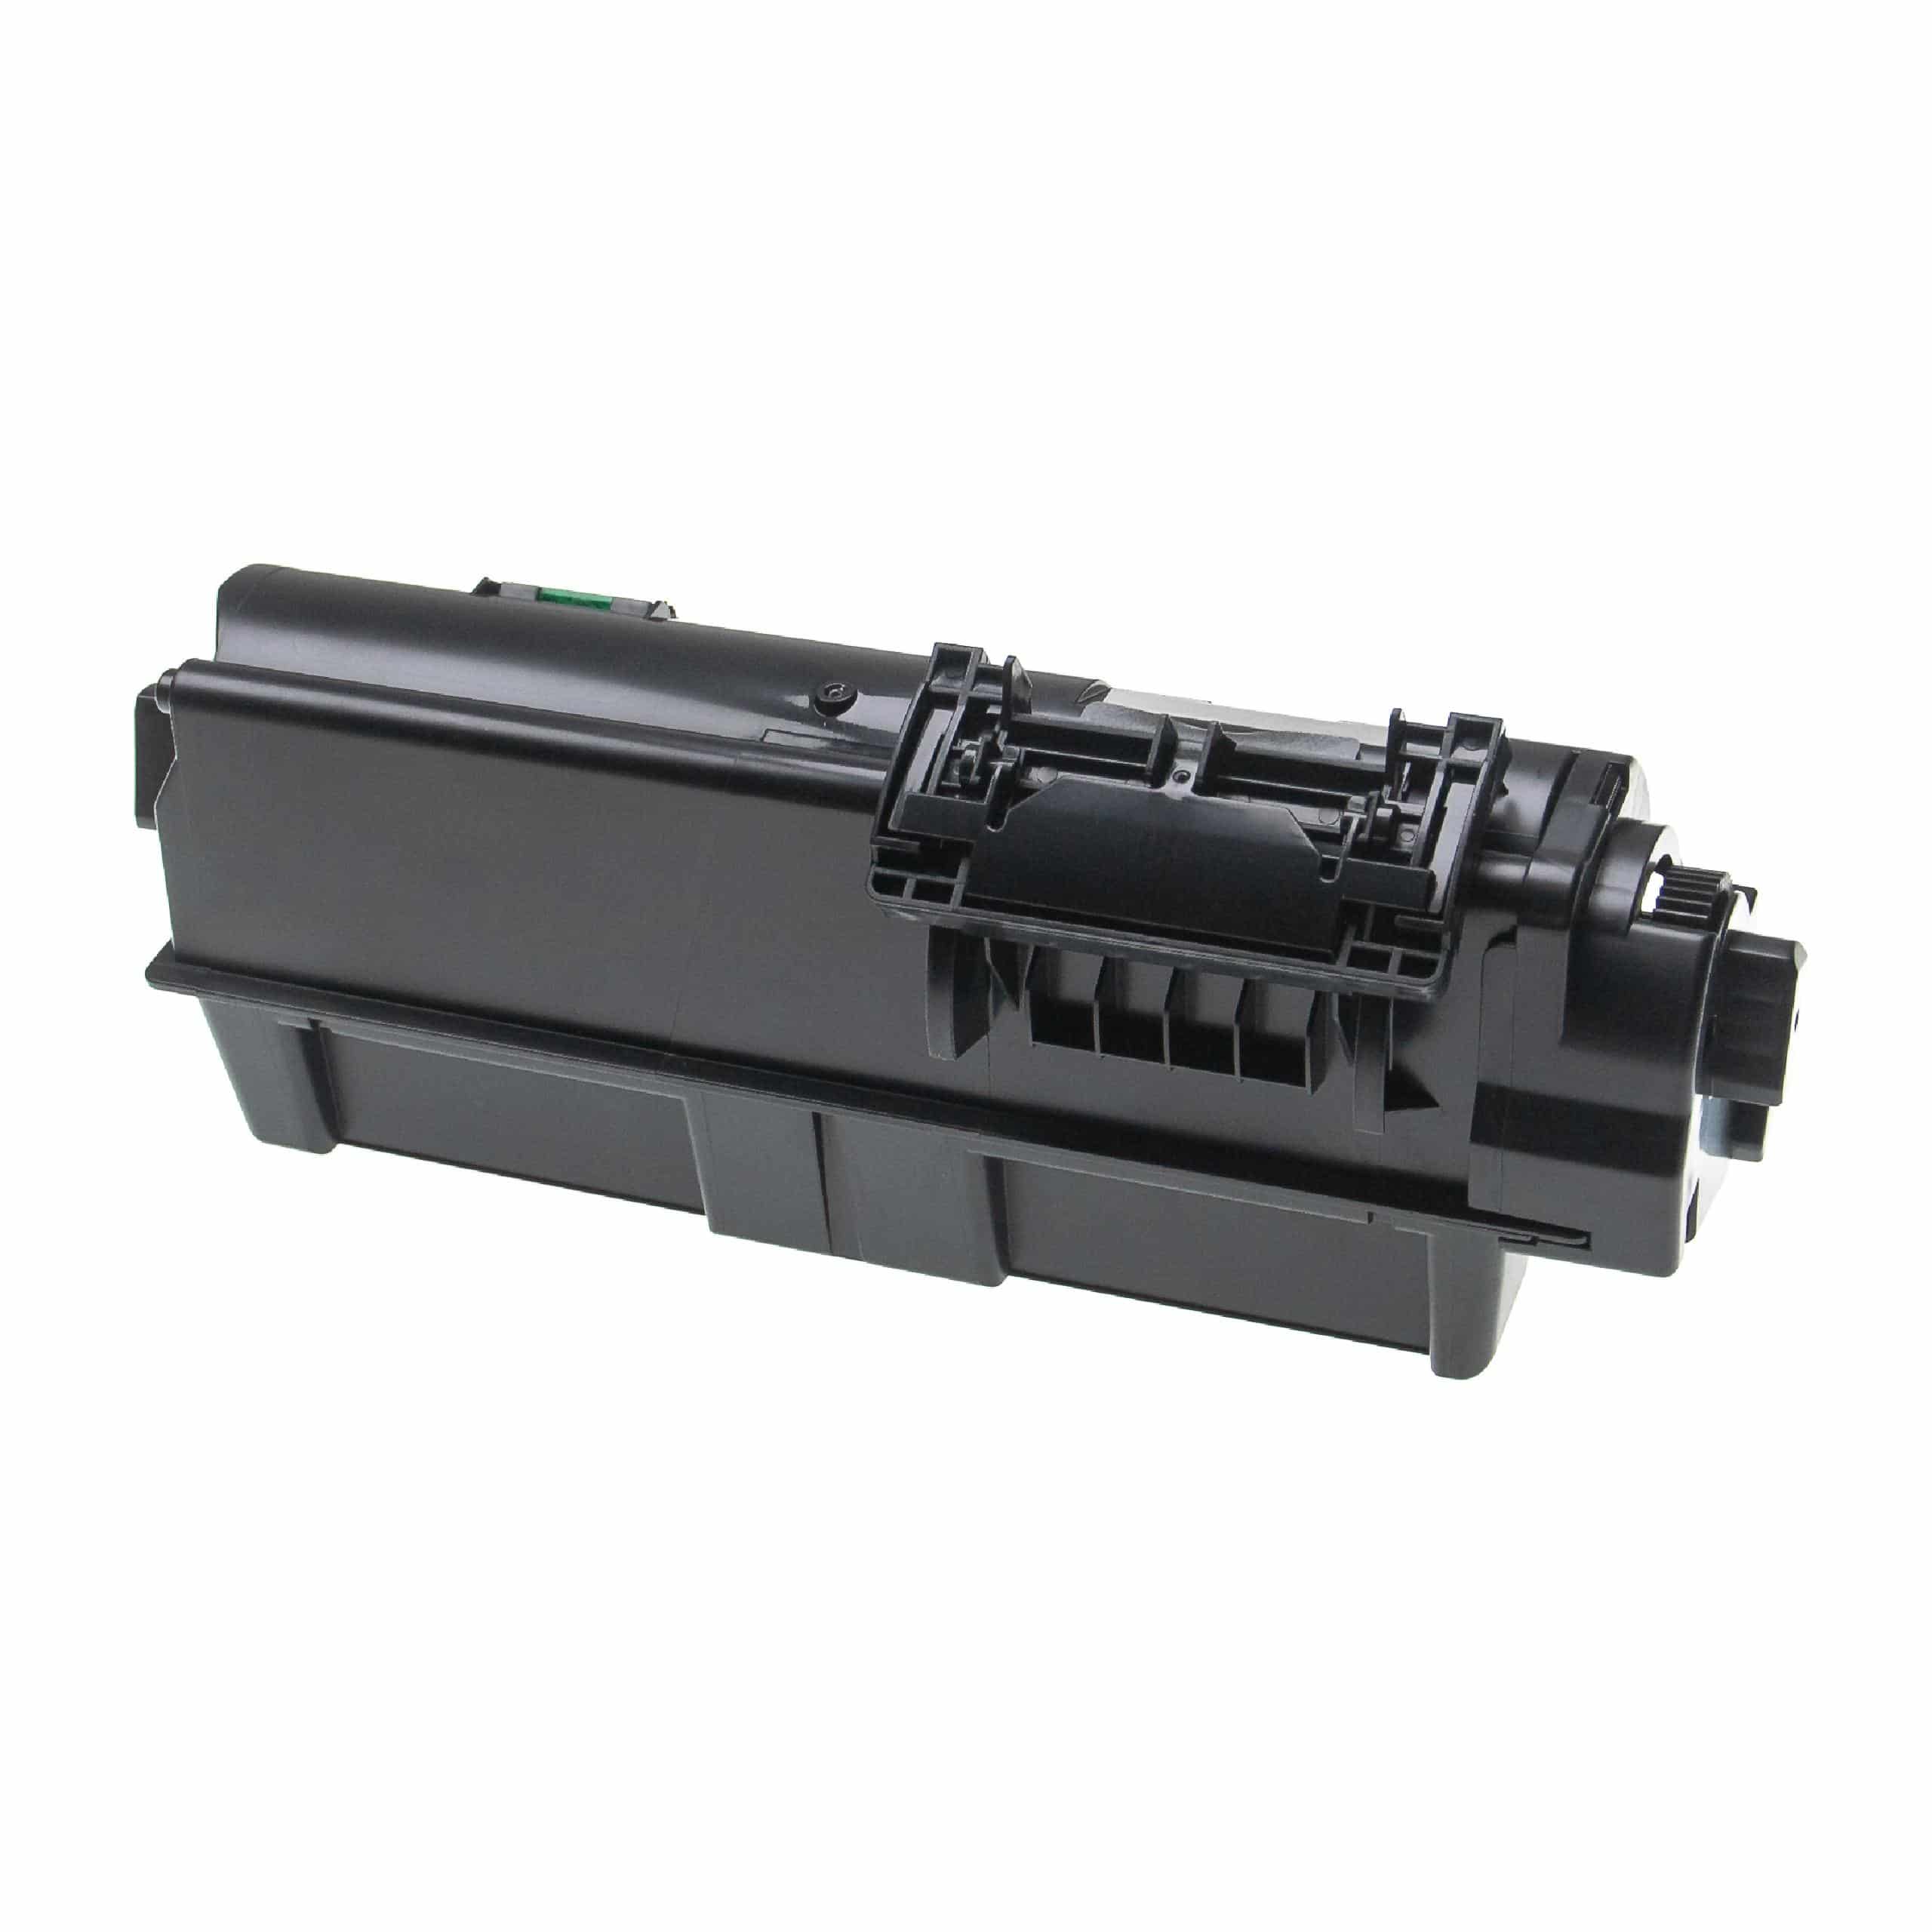 2x Cartouches de toner remplace Kyocera TK-1160 pour imprimante laser Kyocera, noir